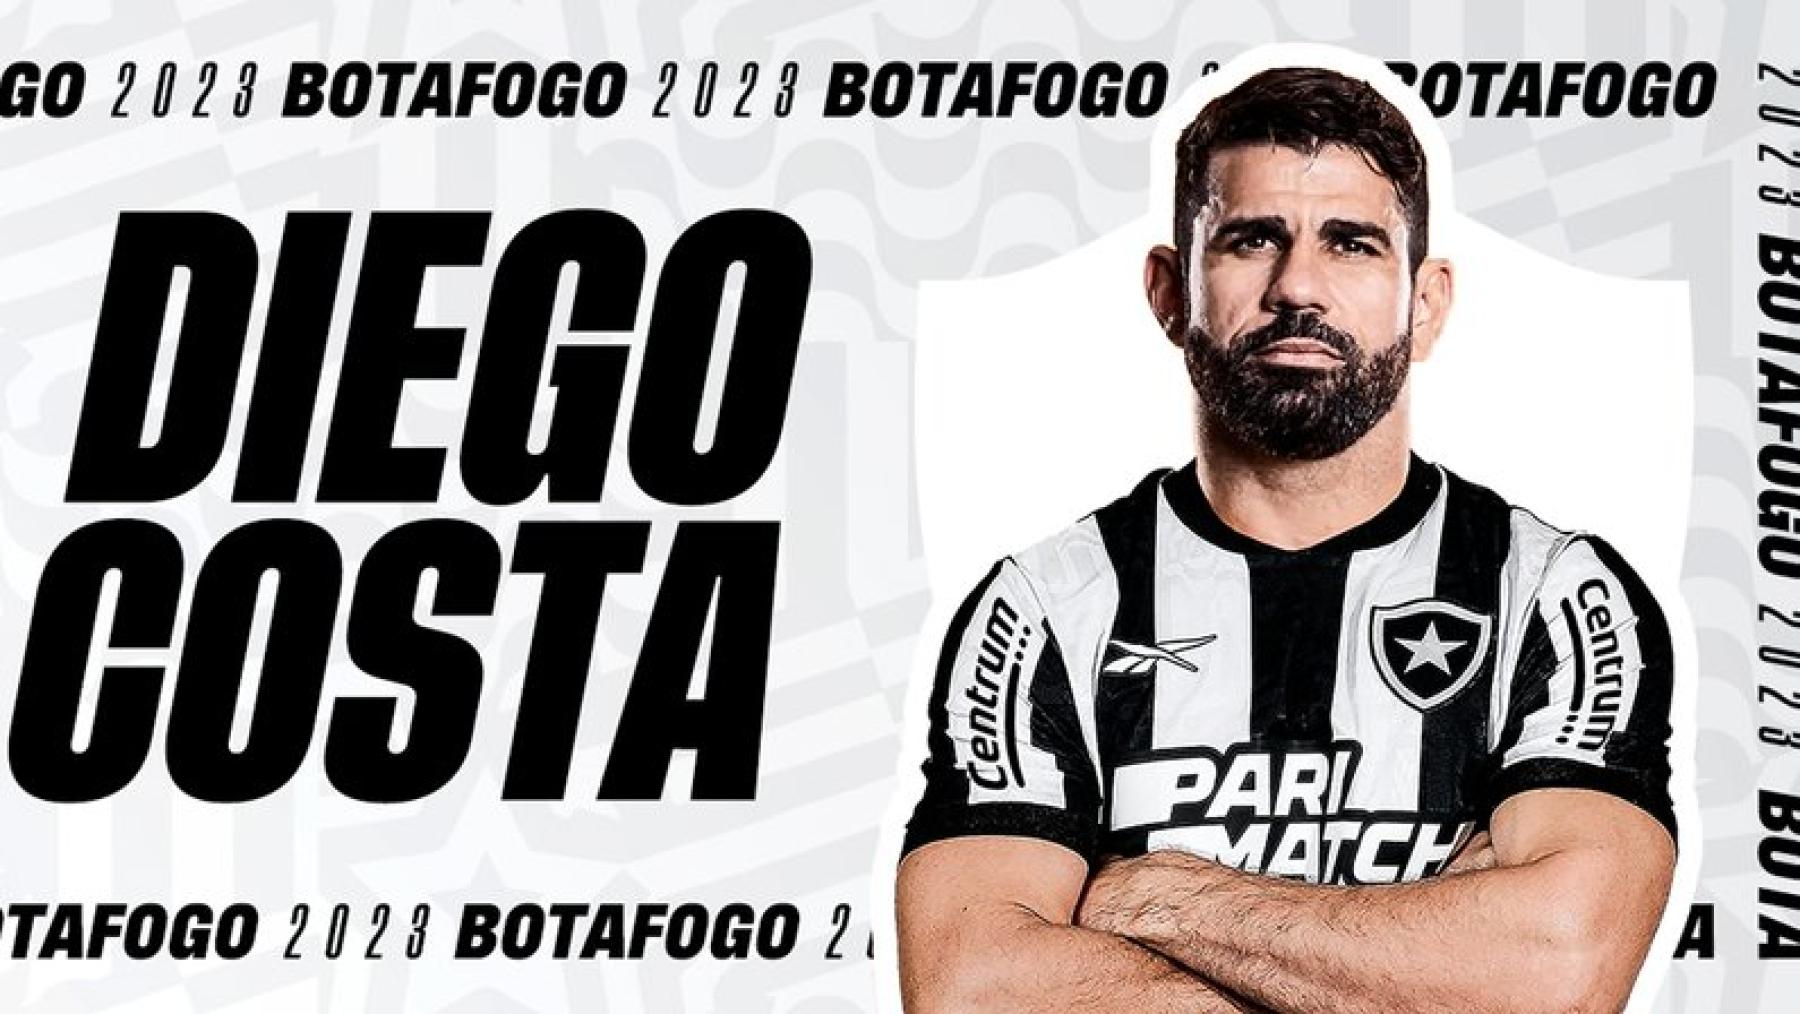 Diego Costa, campeão com o Chelsea, é o novo jogador do Botafogo